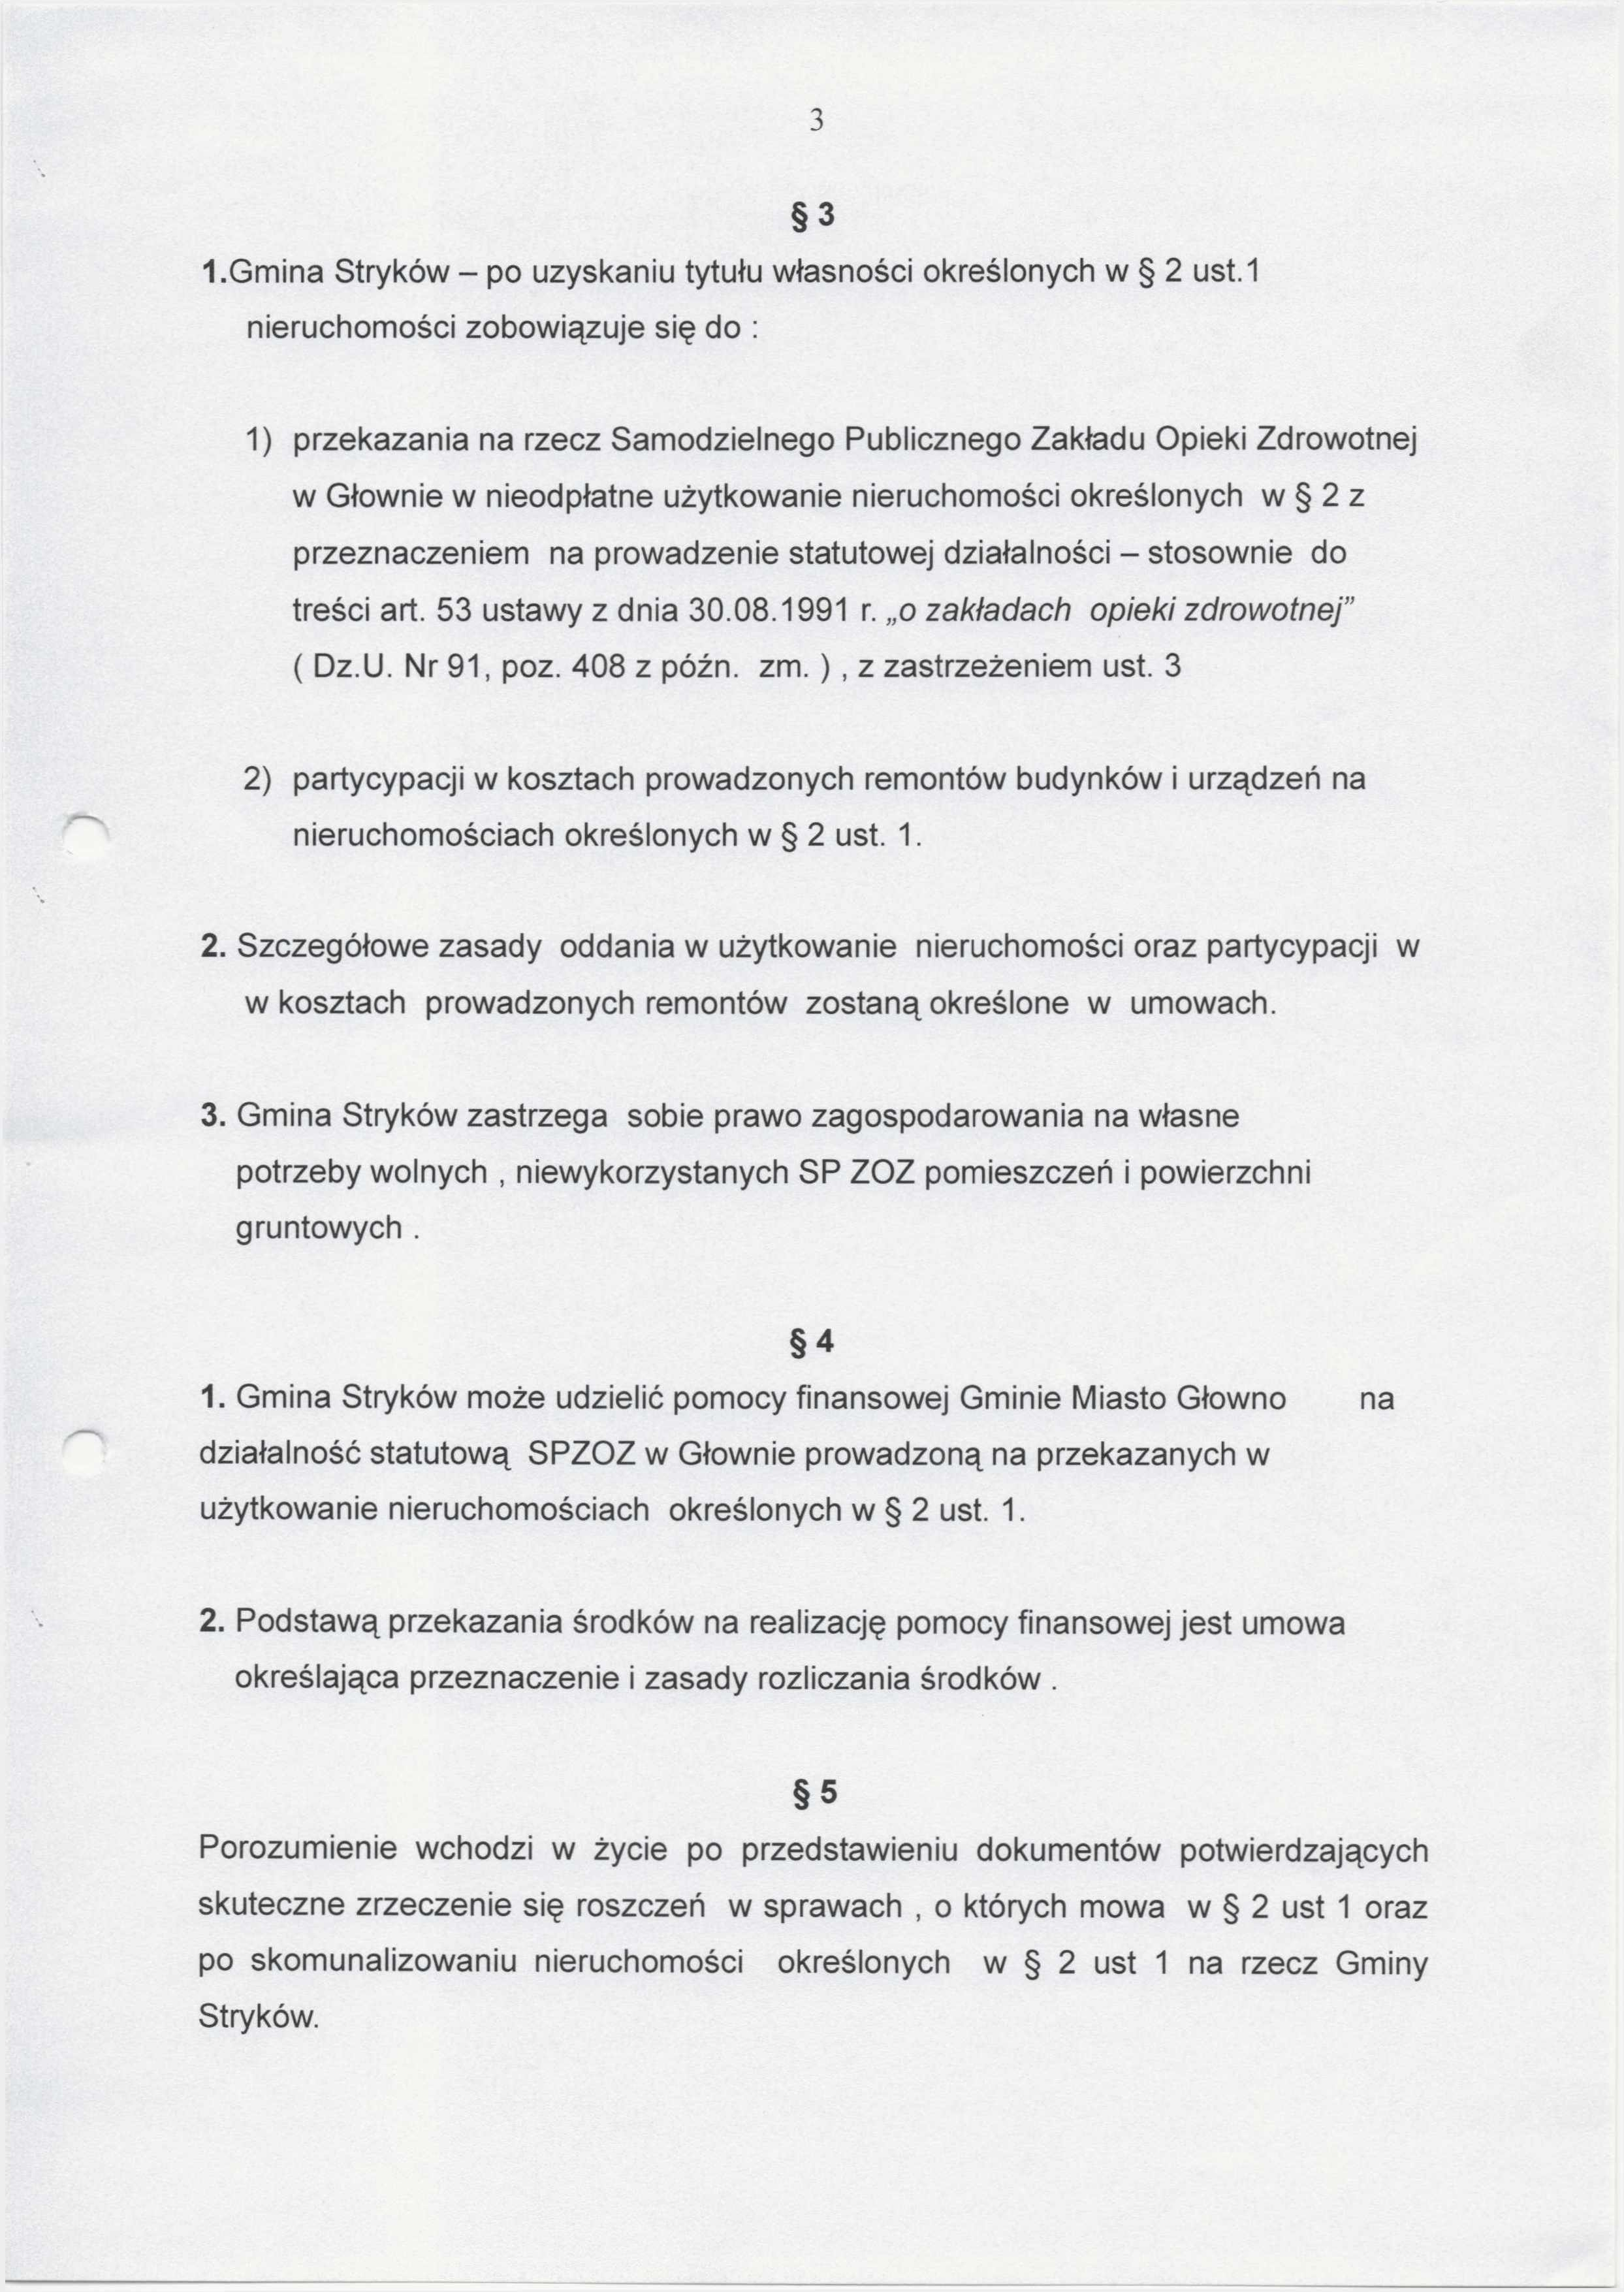 3 1. Gmina Stryków - po uzyskaniu tytułu własności określonych w 2 ust.